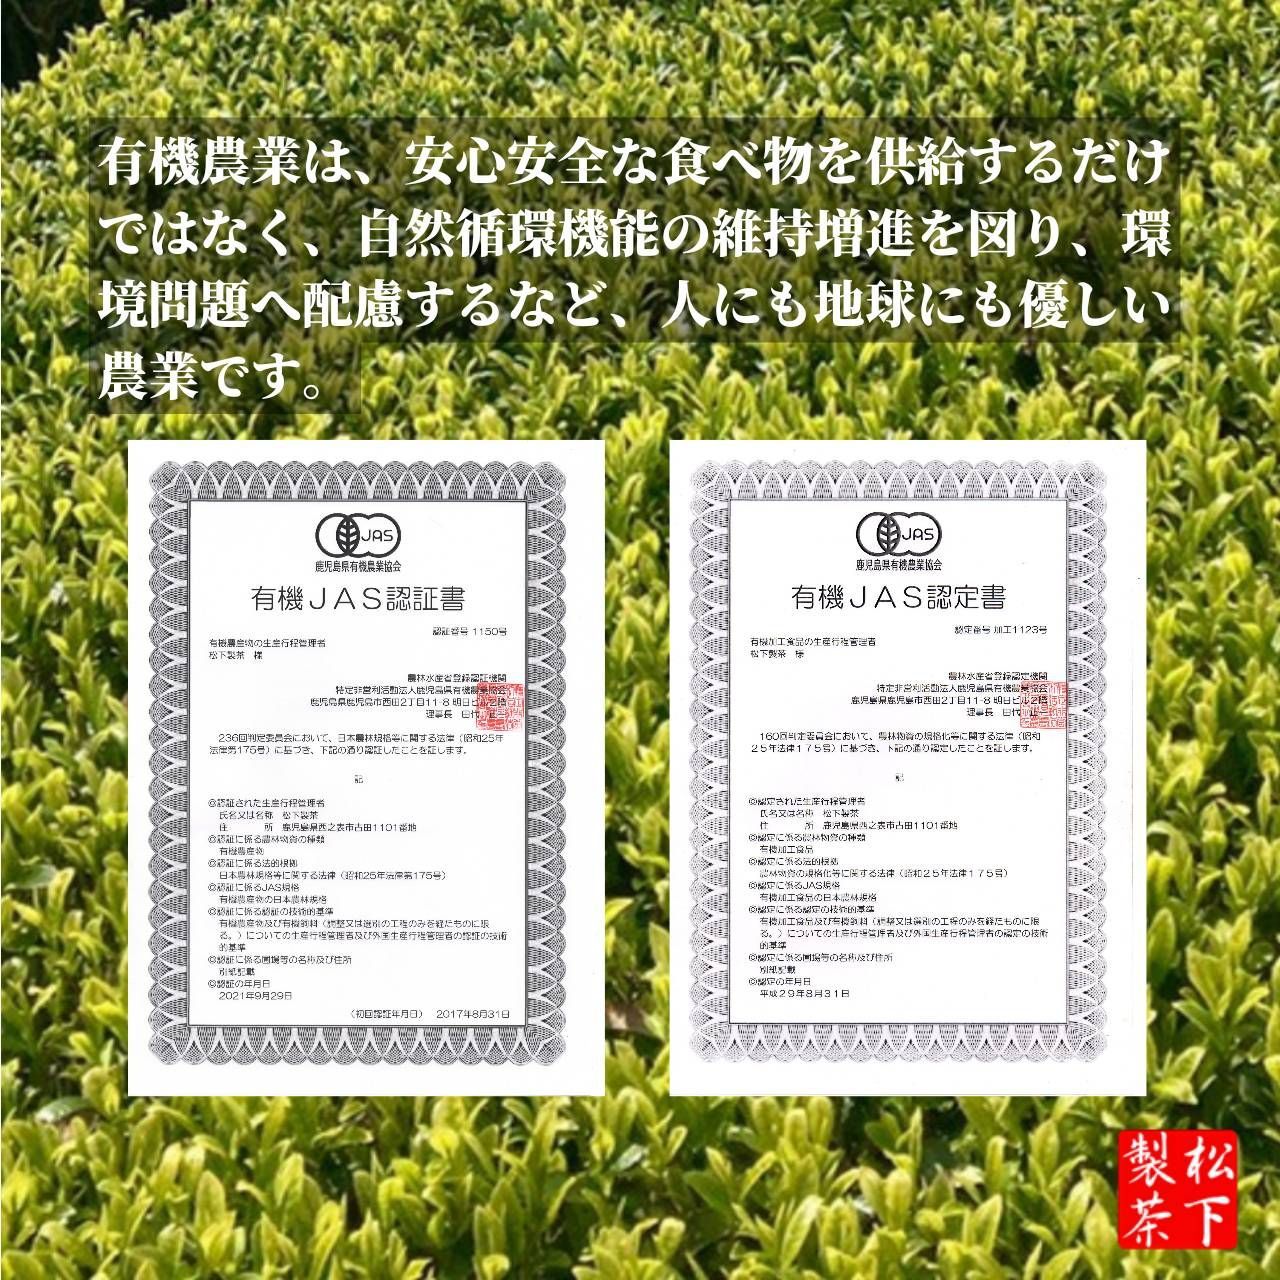 【2022年産/希少品種】種子島の有機緑茶『くりたわせ』 茶葉 100g-5